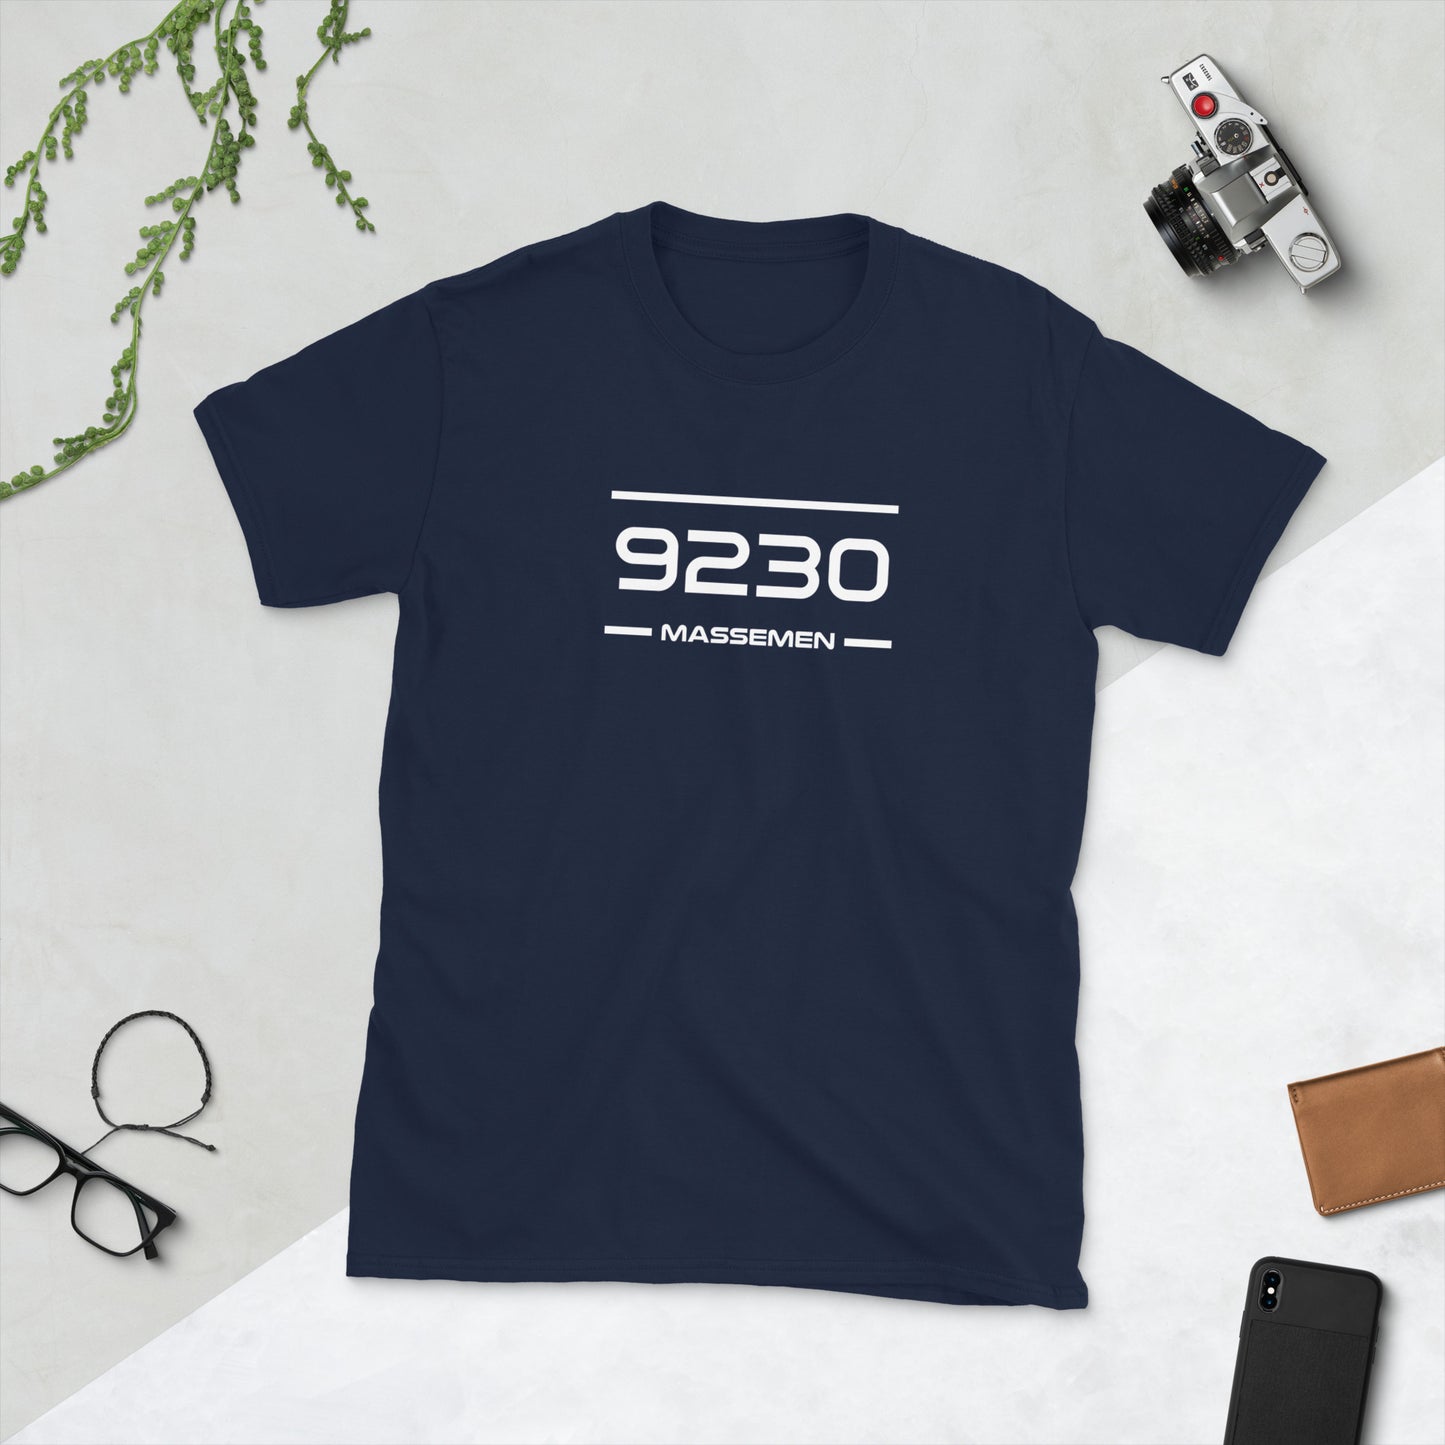 T-Shirt - 9230 - Massemen